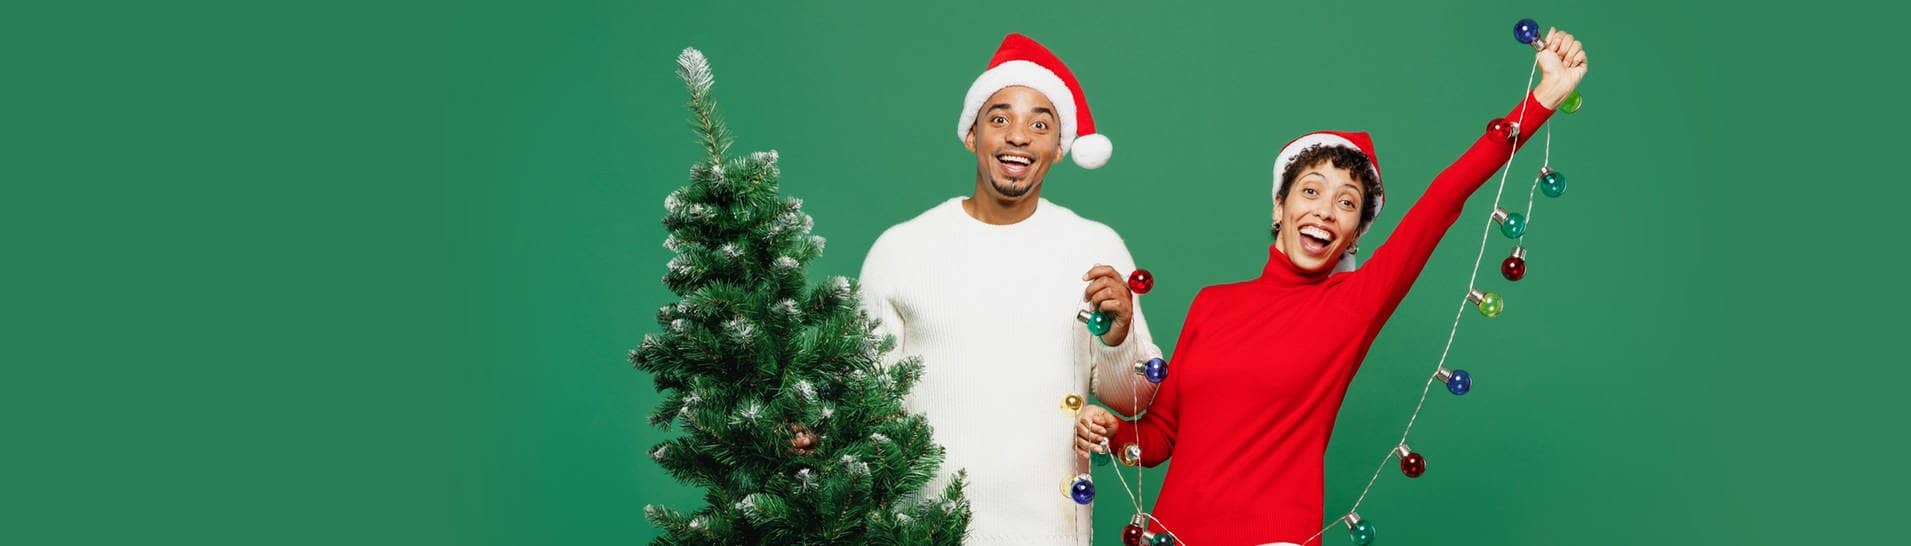 Ein Mann hält einen Weihnachtsbaum in der Hand, neben ihm steht eine Frau und sie überlegen, ob ein Tannenbaum aus Plastik eventuell eine nachhaltige Alternative ist.